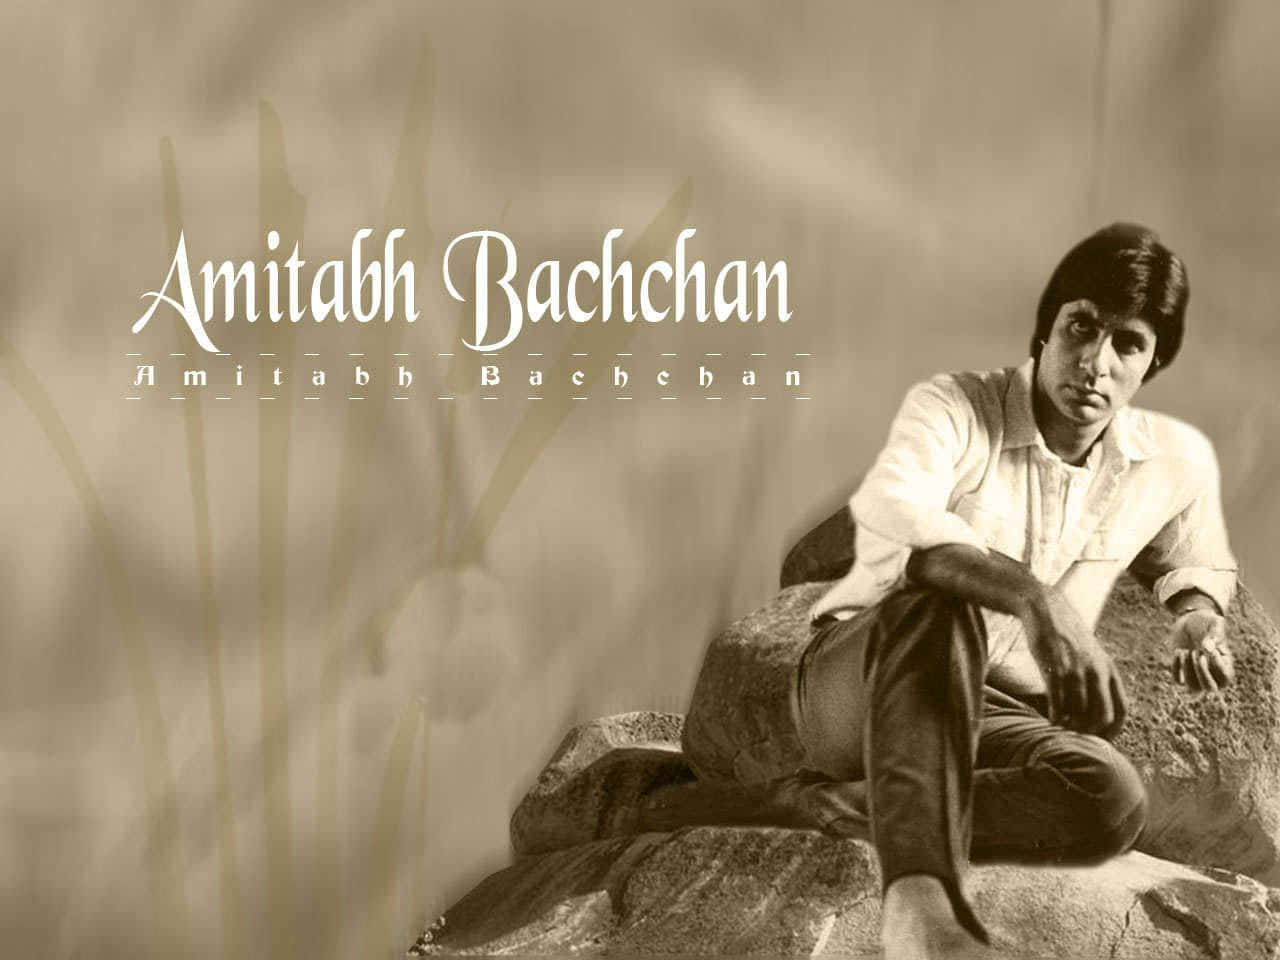 Baggrundmed Amitabh Bachchan